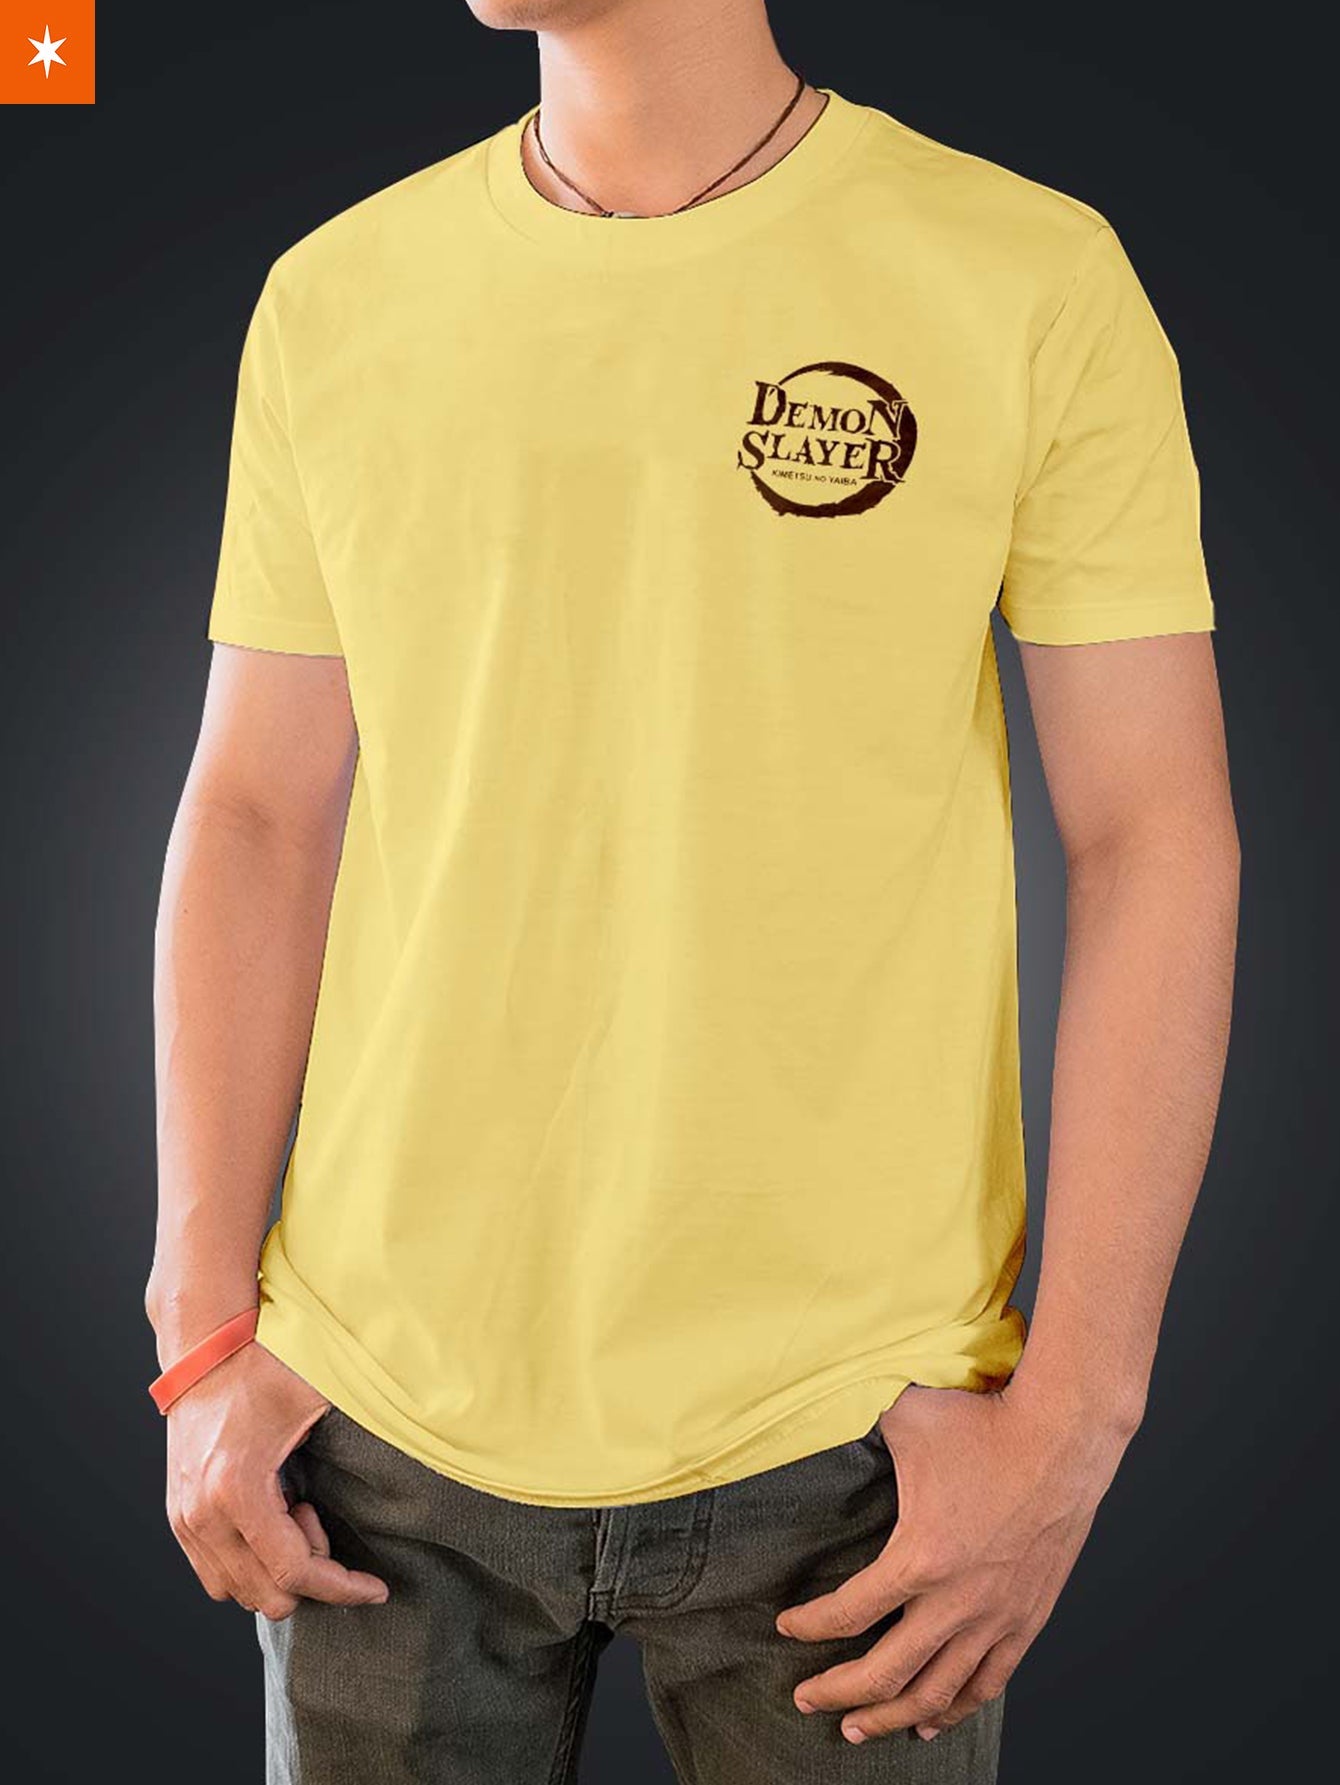 Fandomaniax - KNY Pastel Unisex T-Shirt